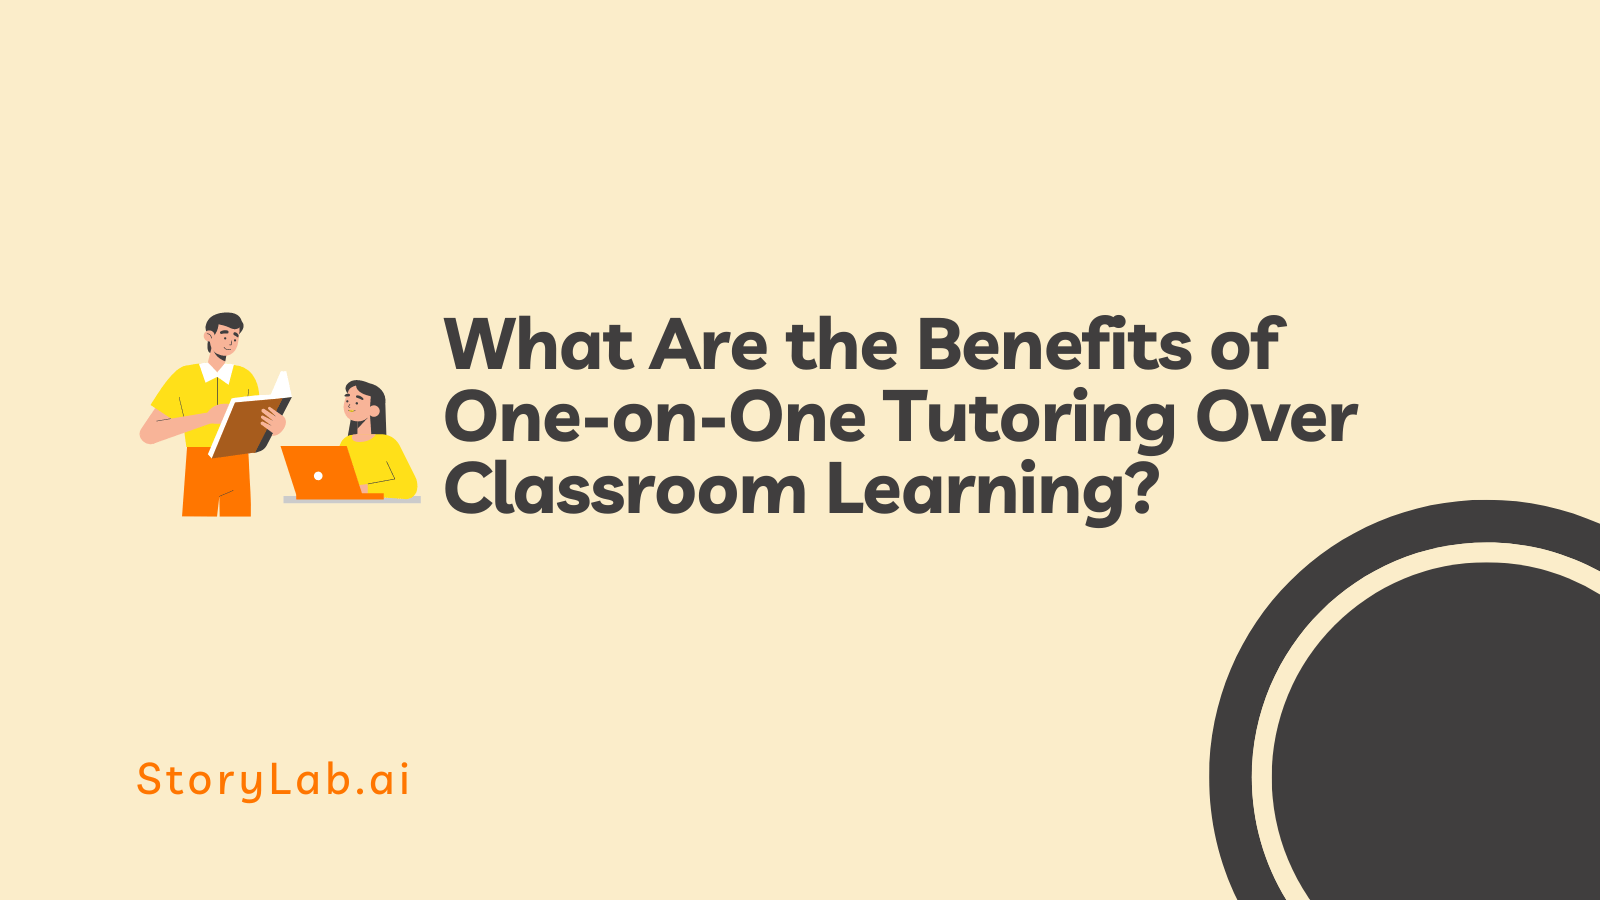 ¿Cuáles son los beneficios de la tutoría individualizada sobre el aprendizaje en el aula?